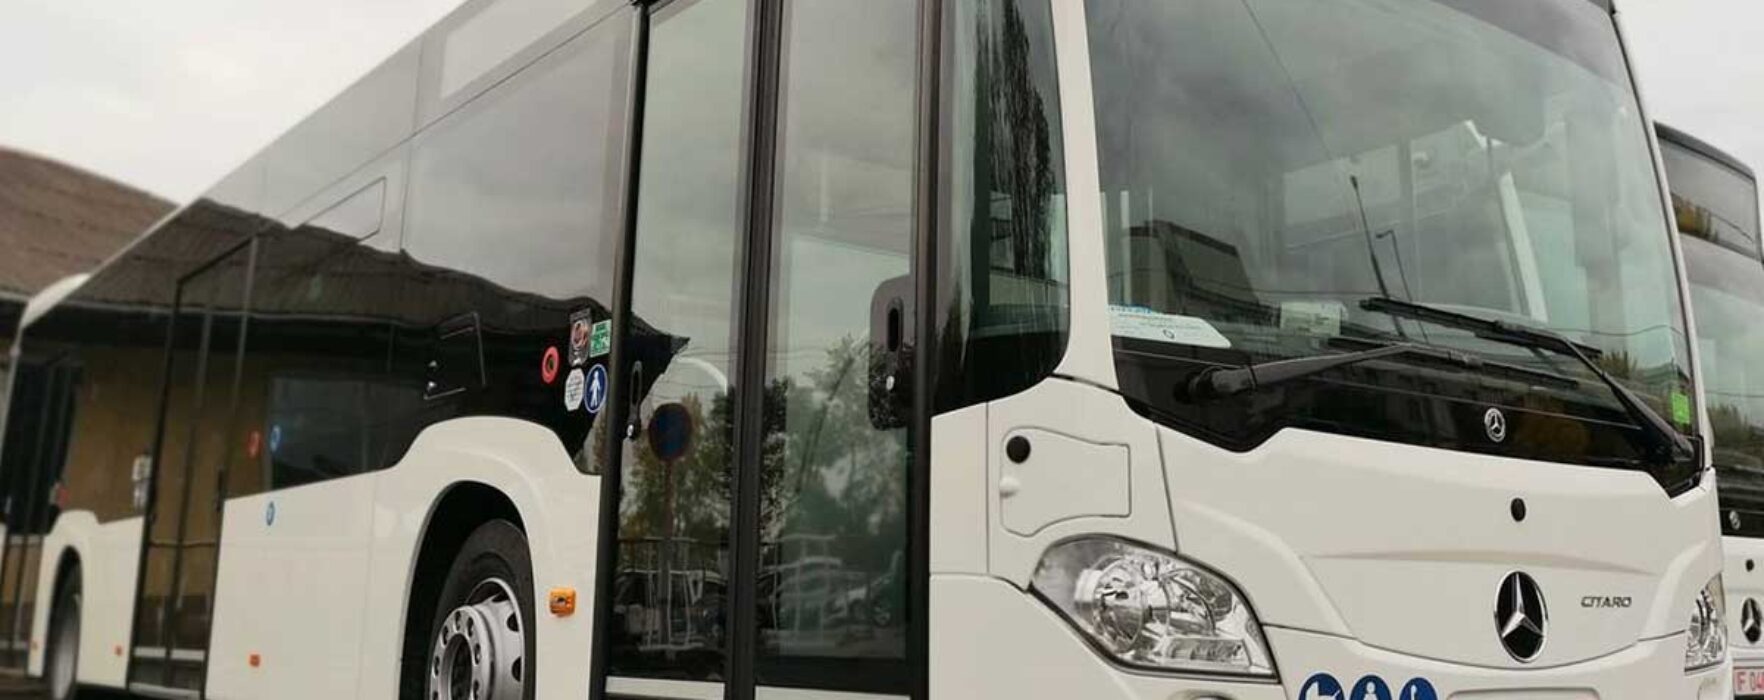 Dâmboviţa: Transport public cu autobuze electrice pentru localităţile din jurul Târgoviştei